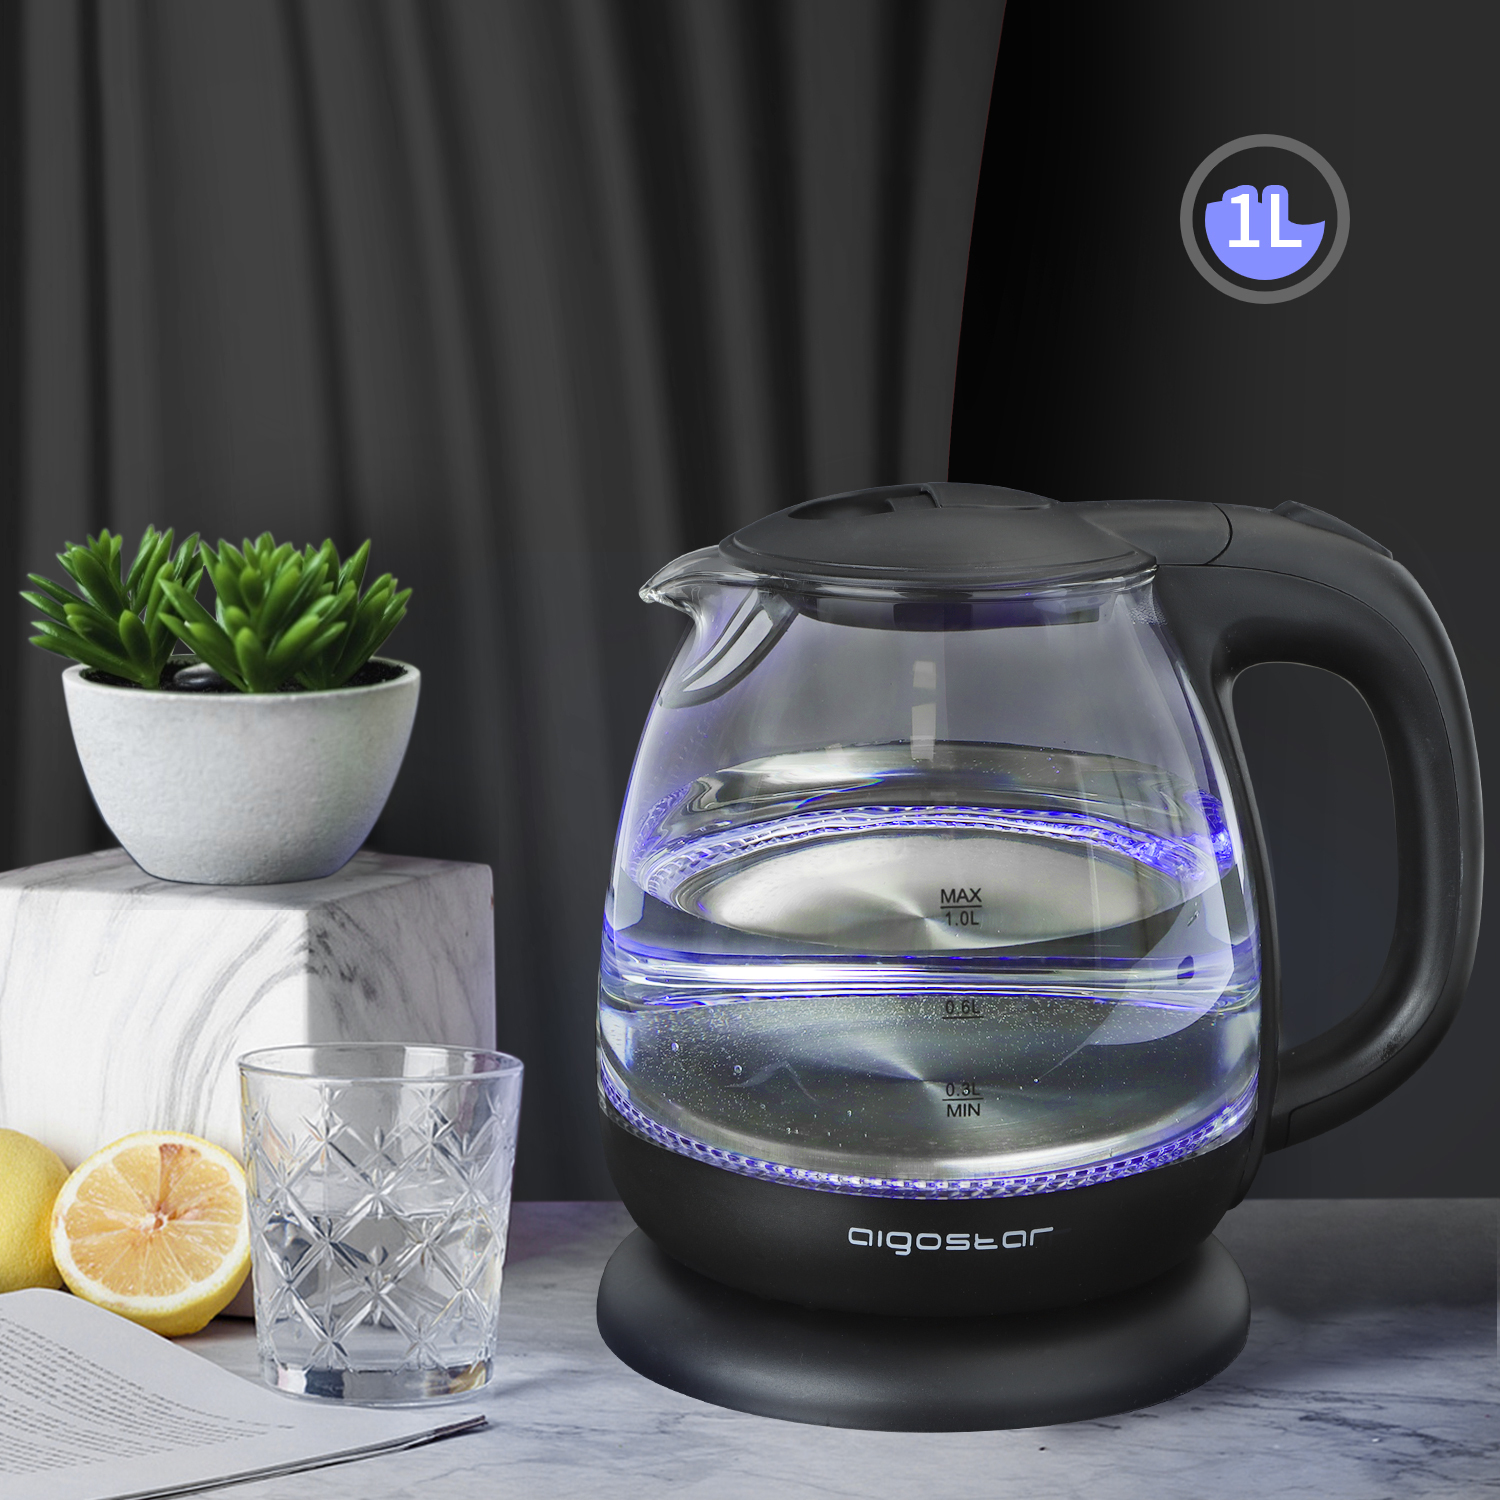 Aigostar Glas Wasserkocher 1 Liter mit LED-Beleuchtung, 2200W,  Reisewasserkocher Klein, Schnellkochfunktion, Abschaltautomatik  Trockenschutz, BPA frei, schwarz.